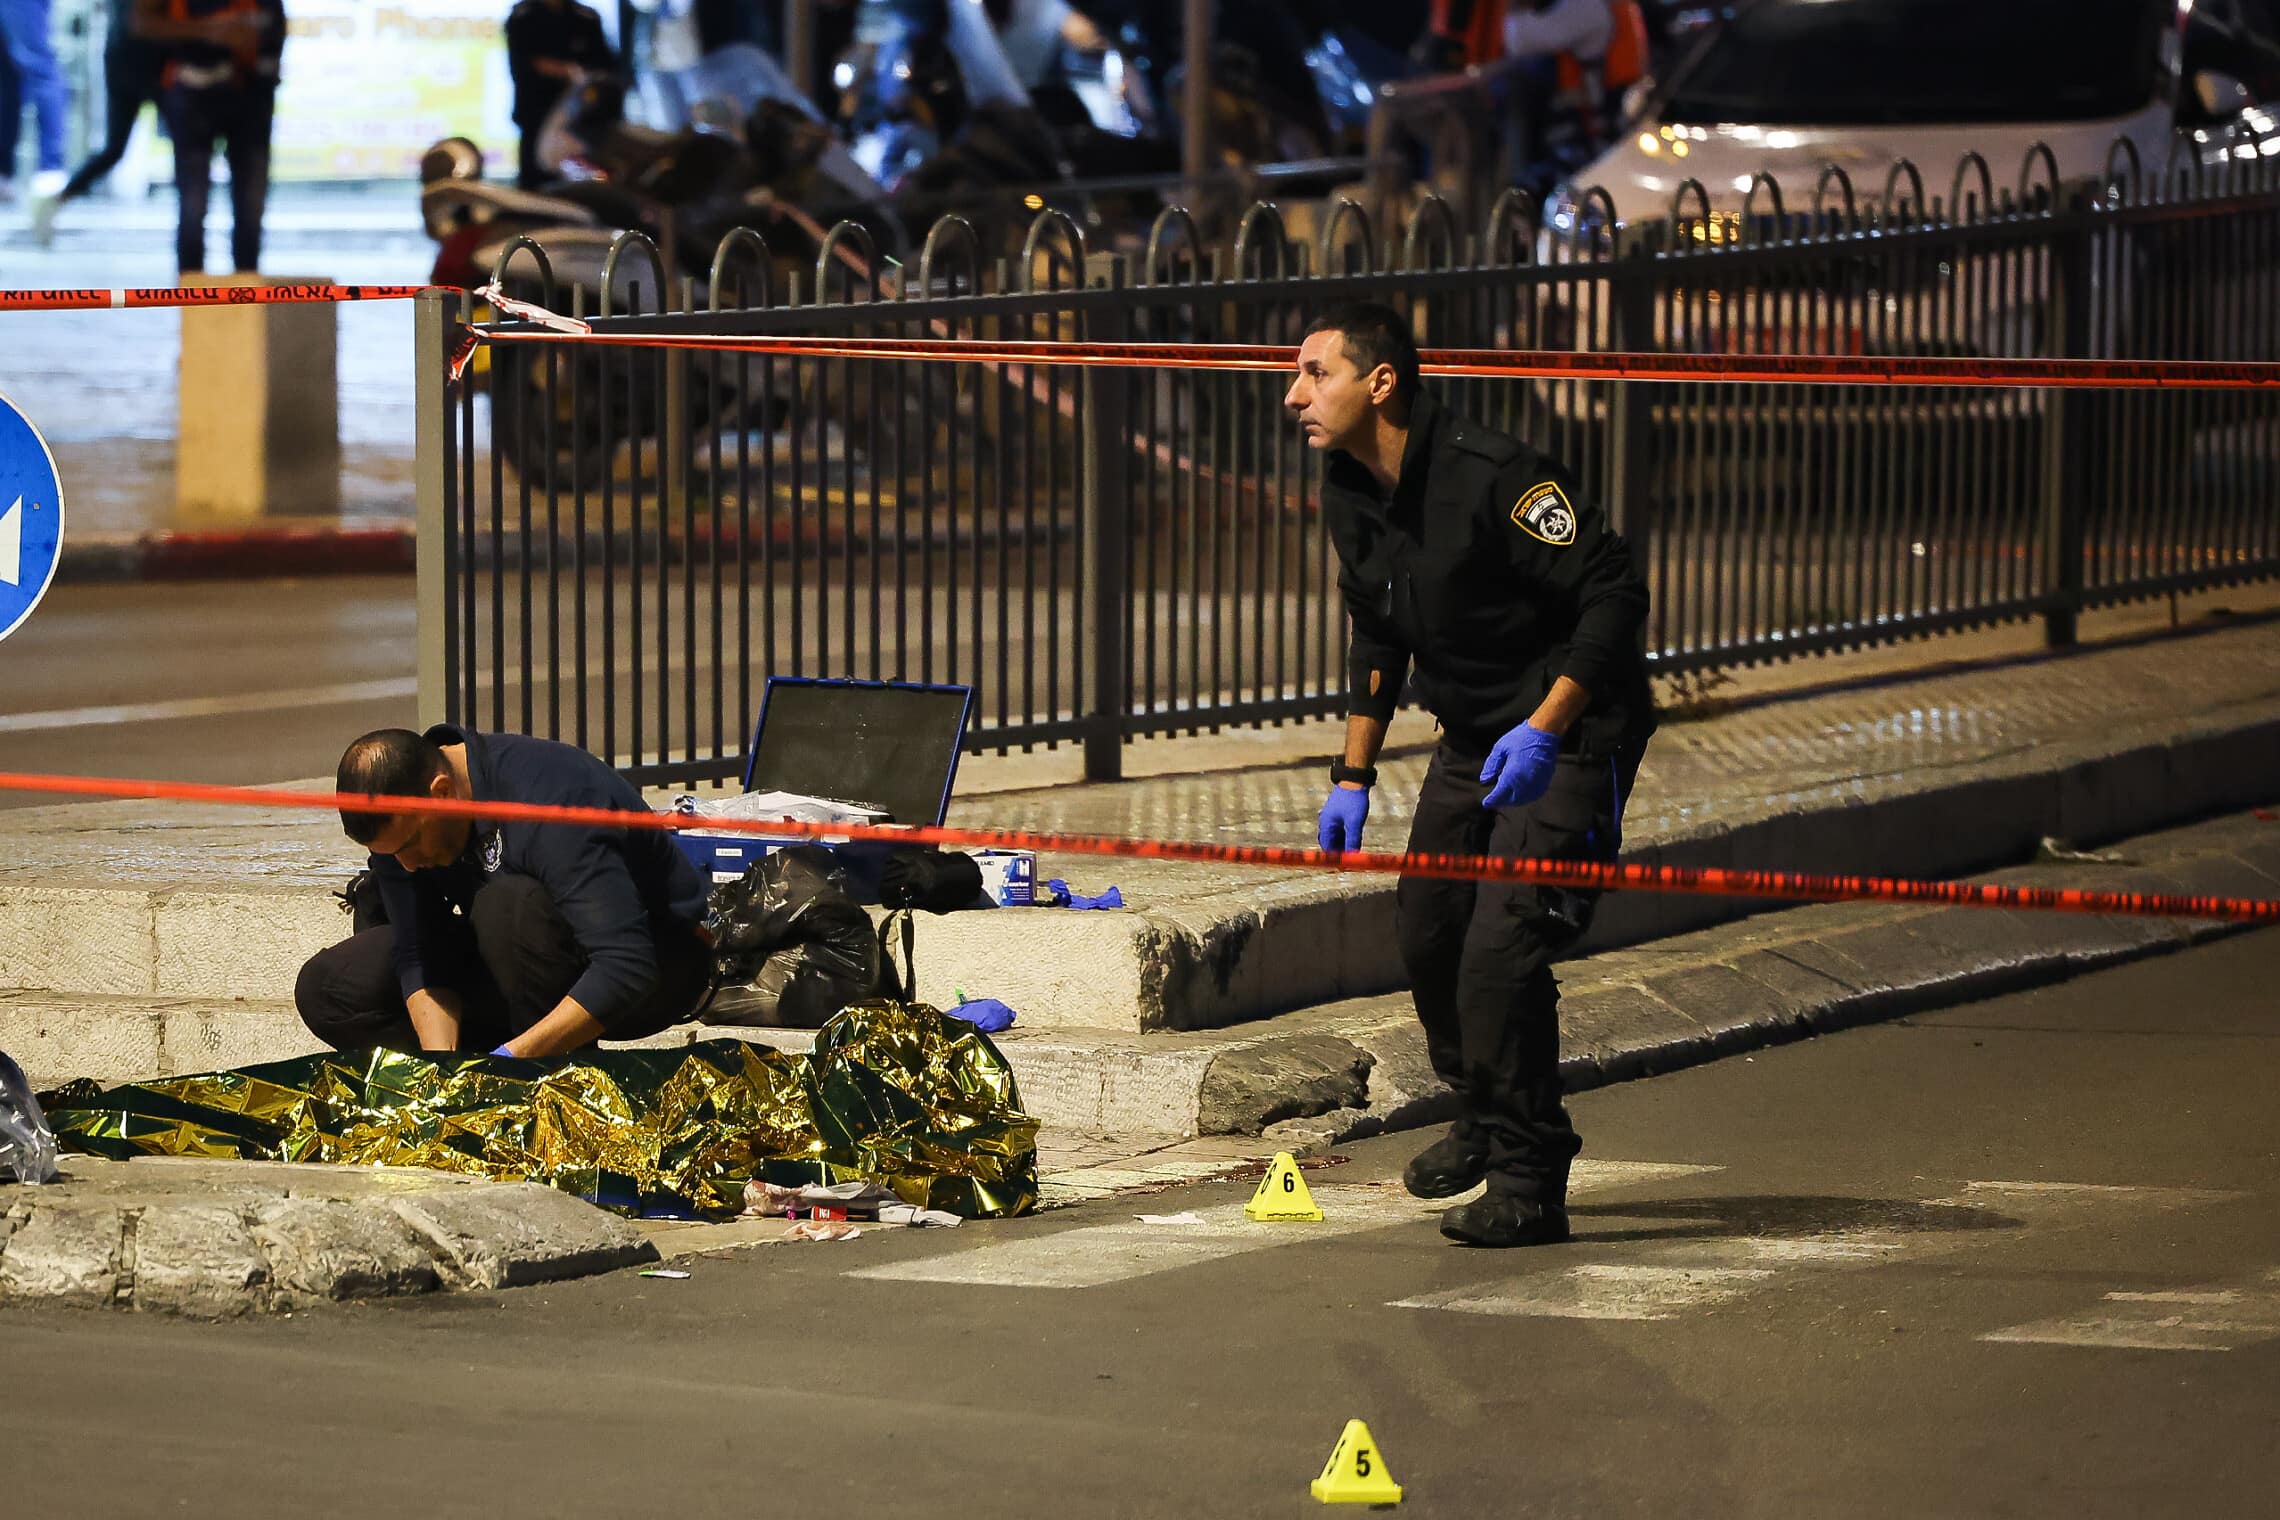 שוטרים ליד שער שכם, בזירה שבה מפגע, שדקר ישראלי, נורה למוות, 4 בדצמבר 2021 (צילום: יונתן זינדל/פלאש 90)